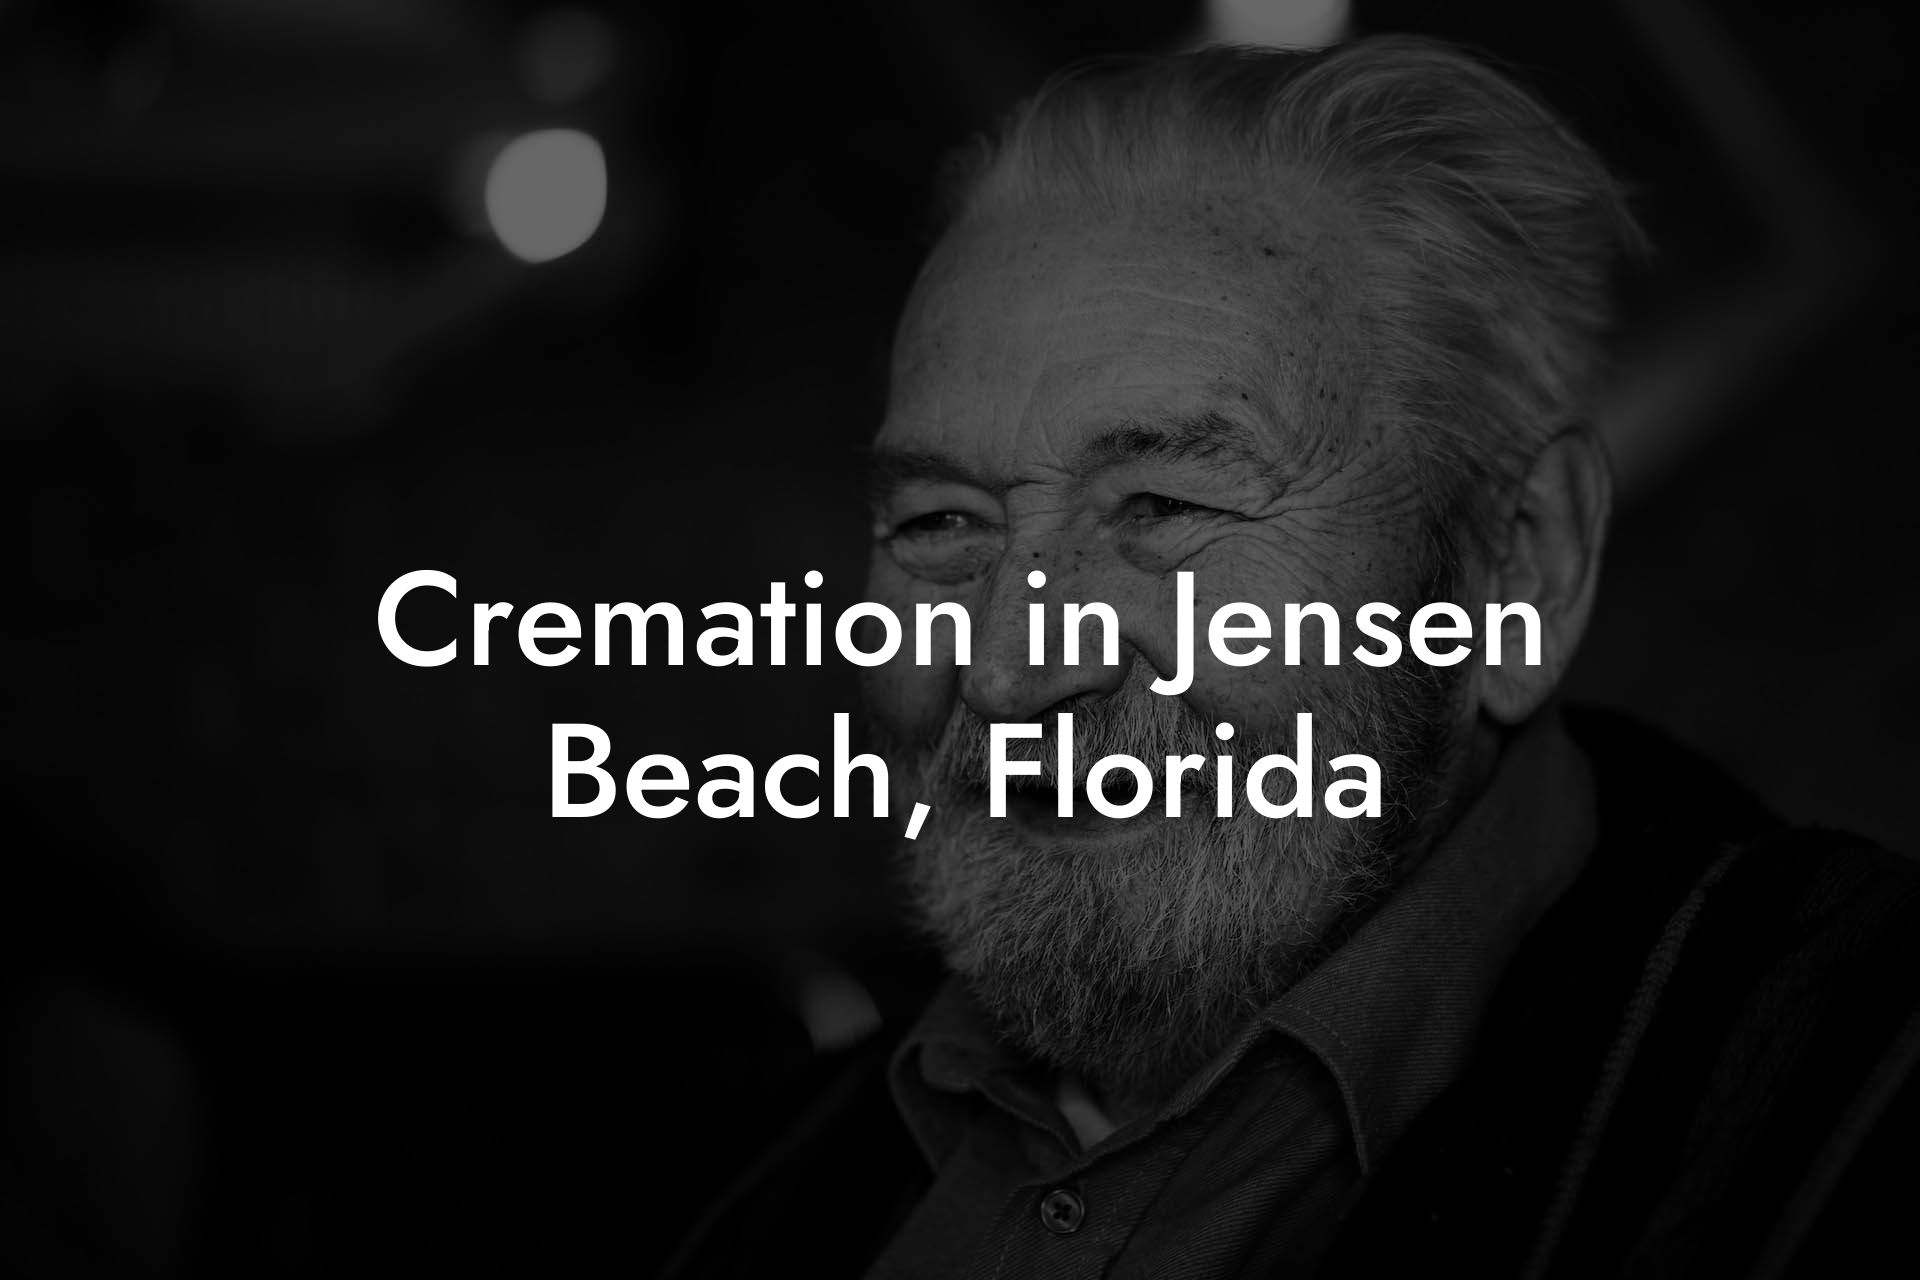 Cremation in Jensen Beach, Florida